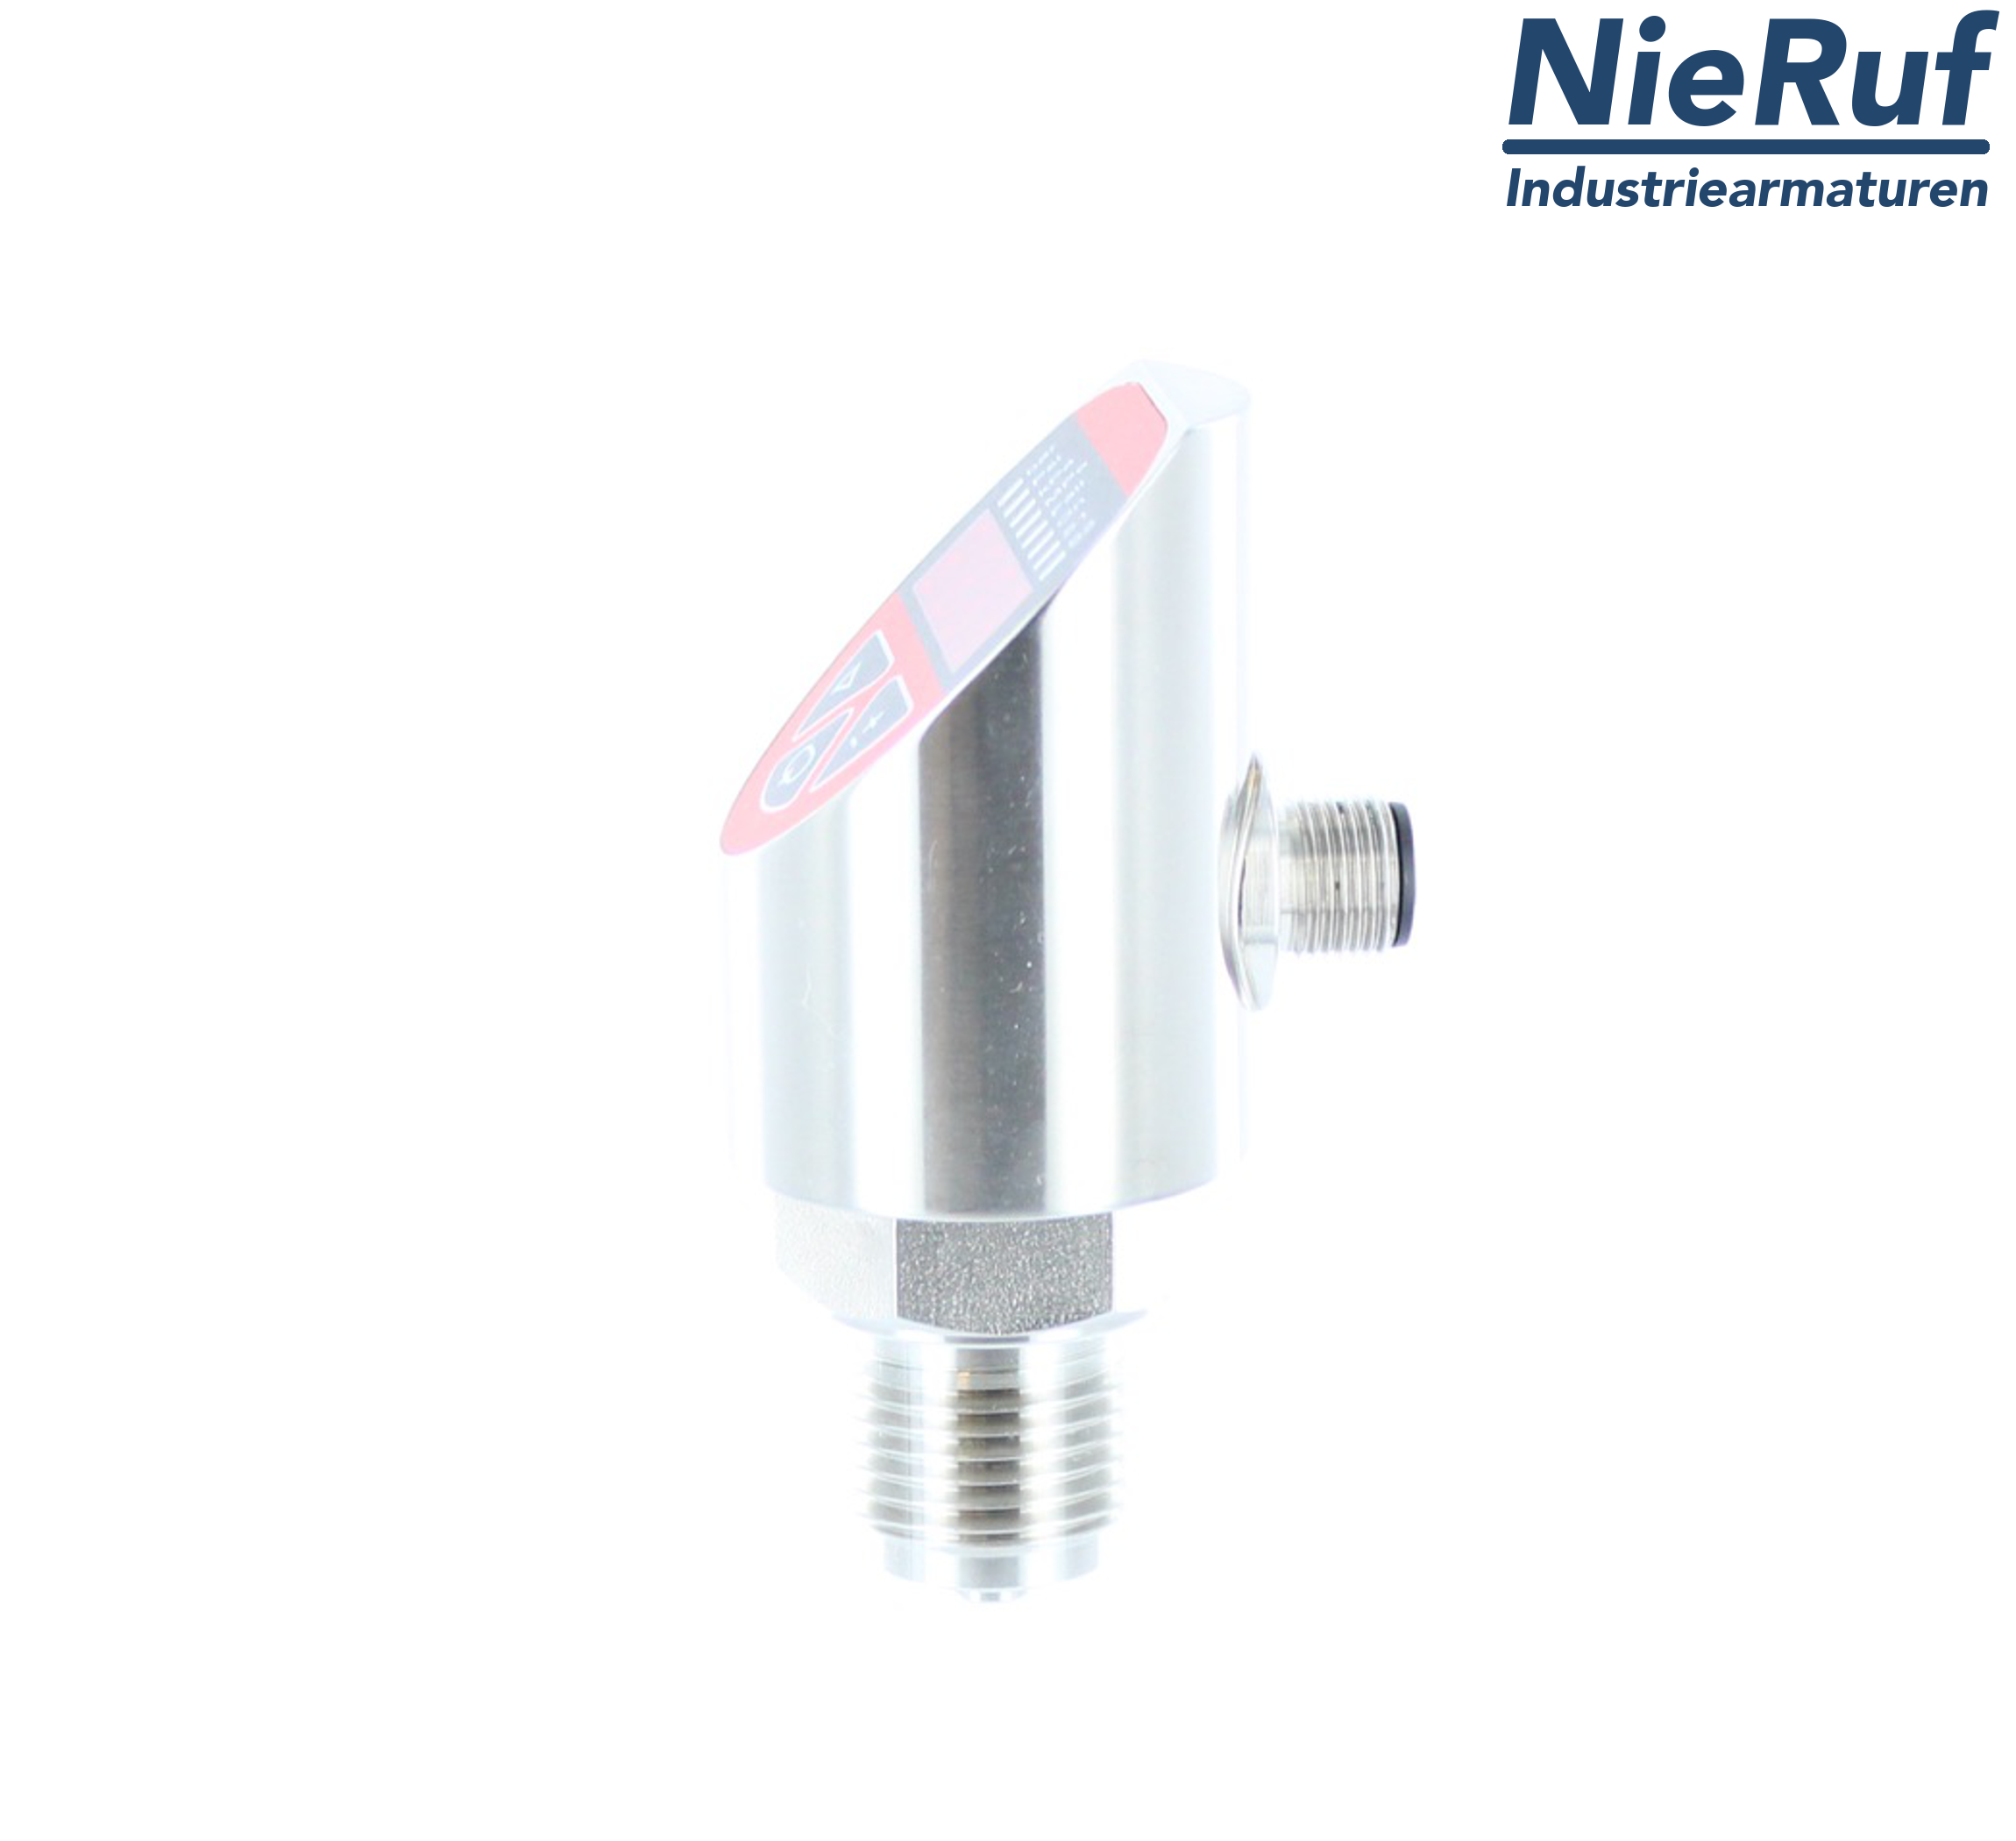 digital pressure sensor G 1/2" B 4-wire: 1xPNP, 1x4 - 20mA FPM 0,0 - 16,0 bar